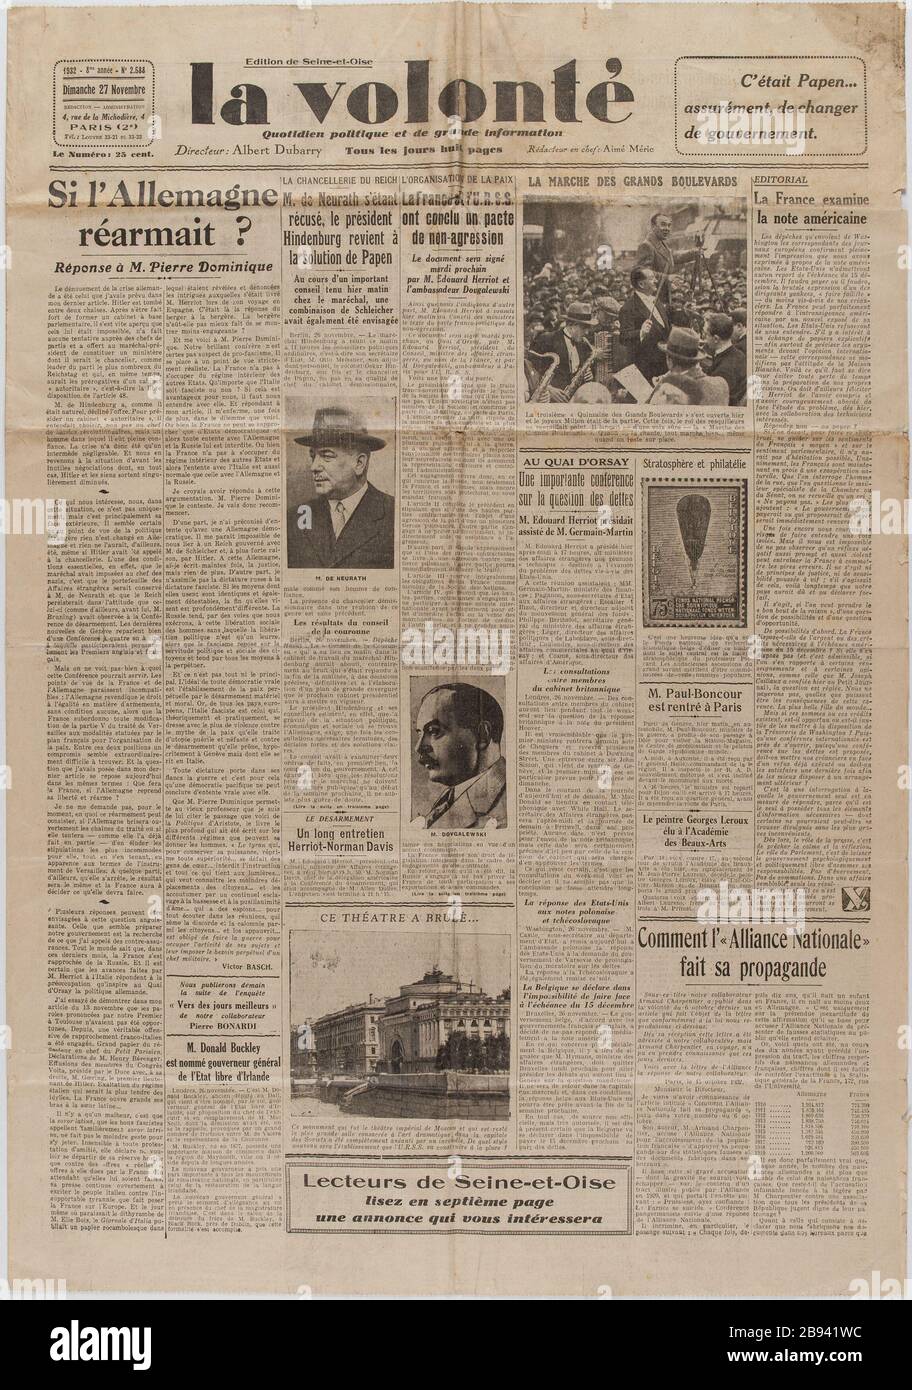 Newspaper 'The Will' of November 27, 1932 Journal 'La Volonté' du 27 novembre 1932. Papier imprimé, 1932. Musée du Général Leclerc de Hauteclocque et de la Libération de Paris, musée Jean Moulin. Stock Photo